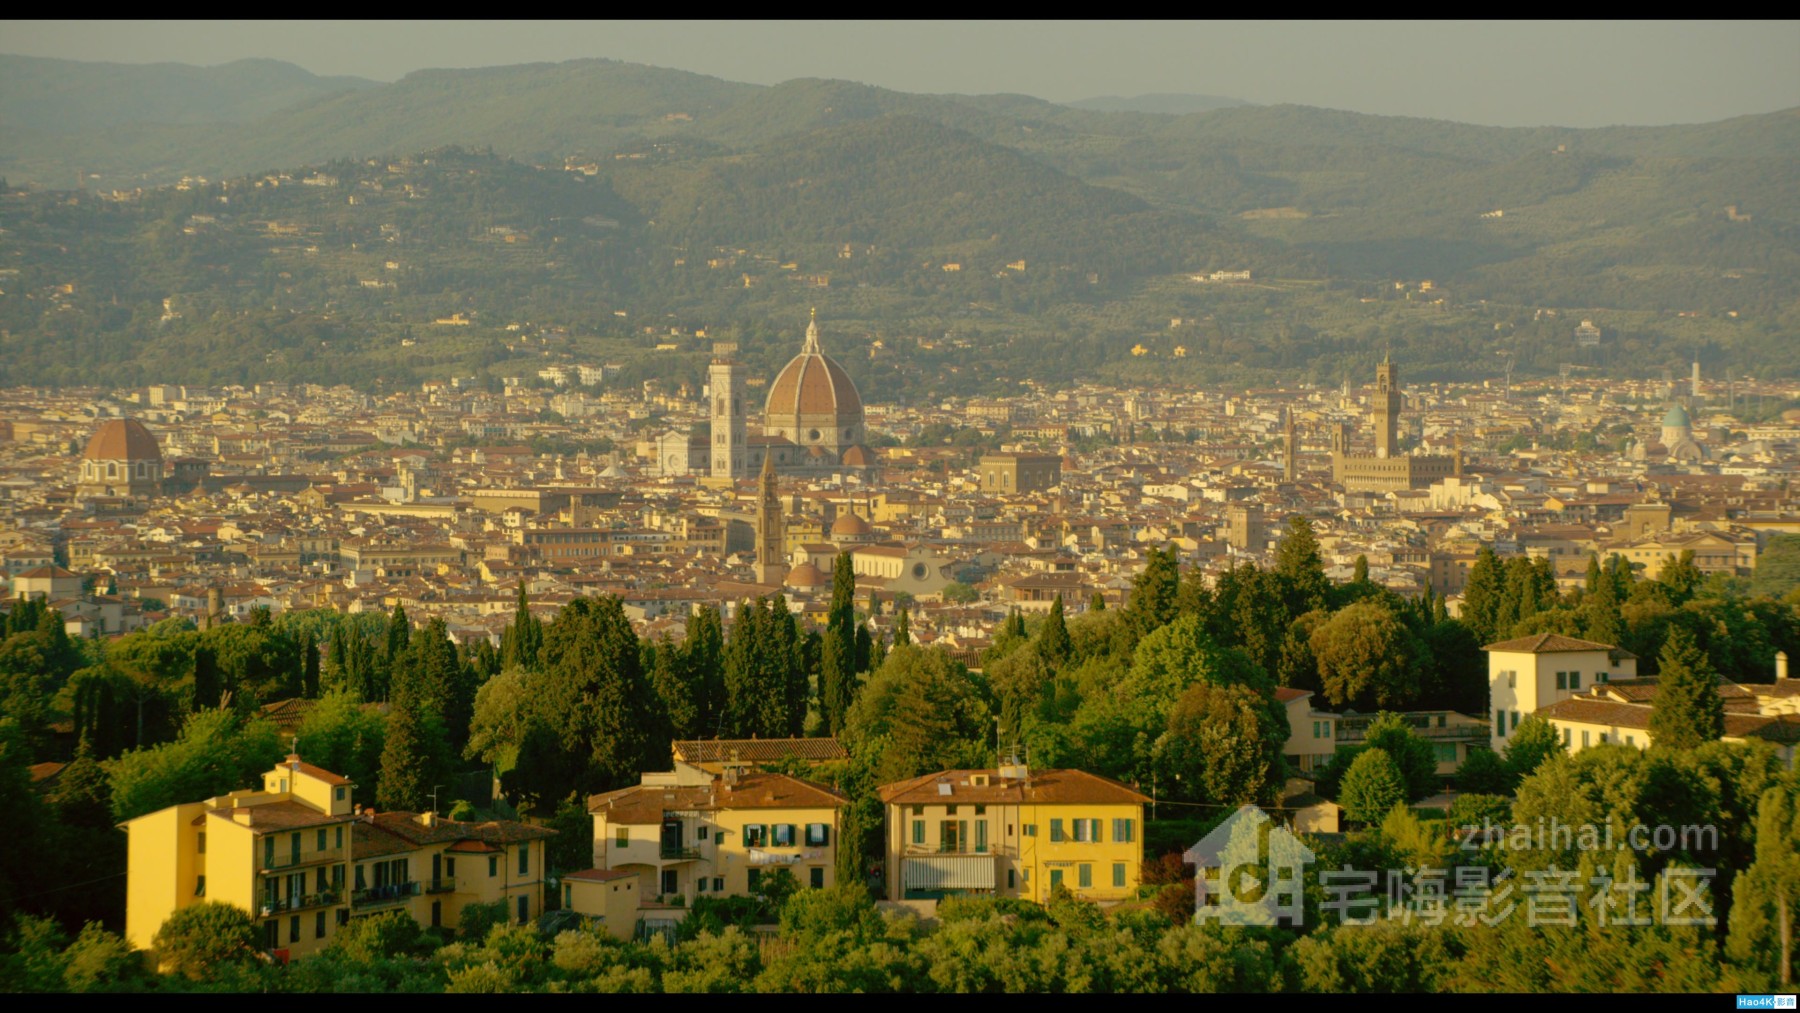 ڷ4K.Florence and the Uffizi Gallery 2015 2160p ITA UHD Blu-.jpg